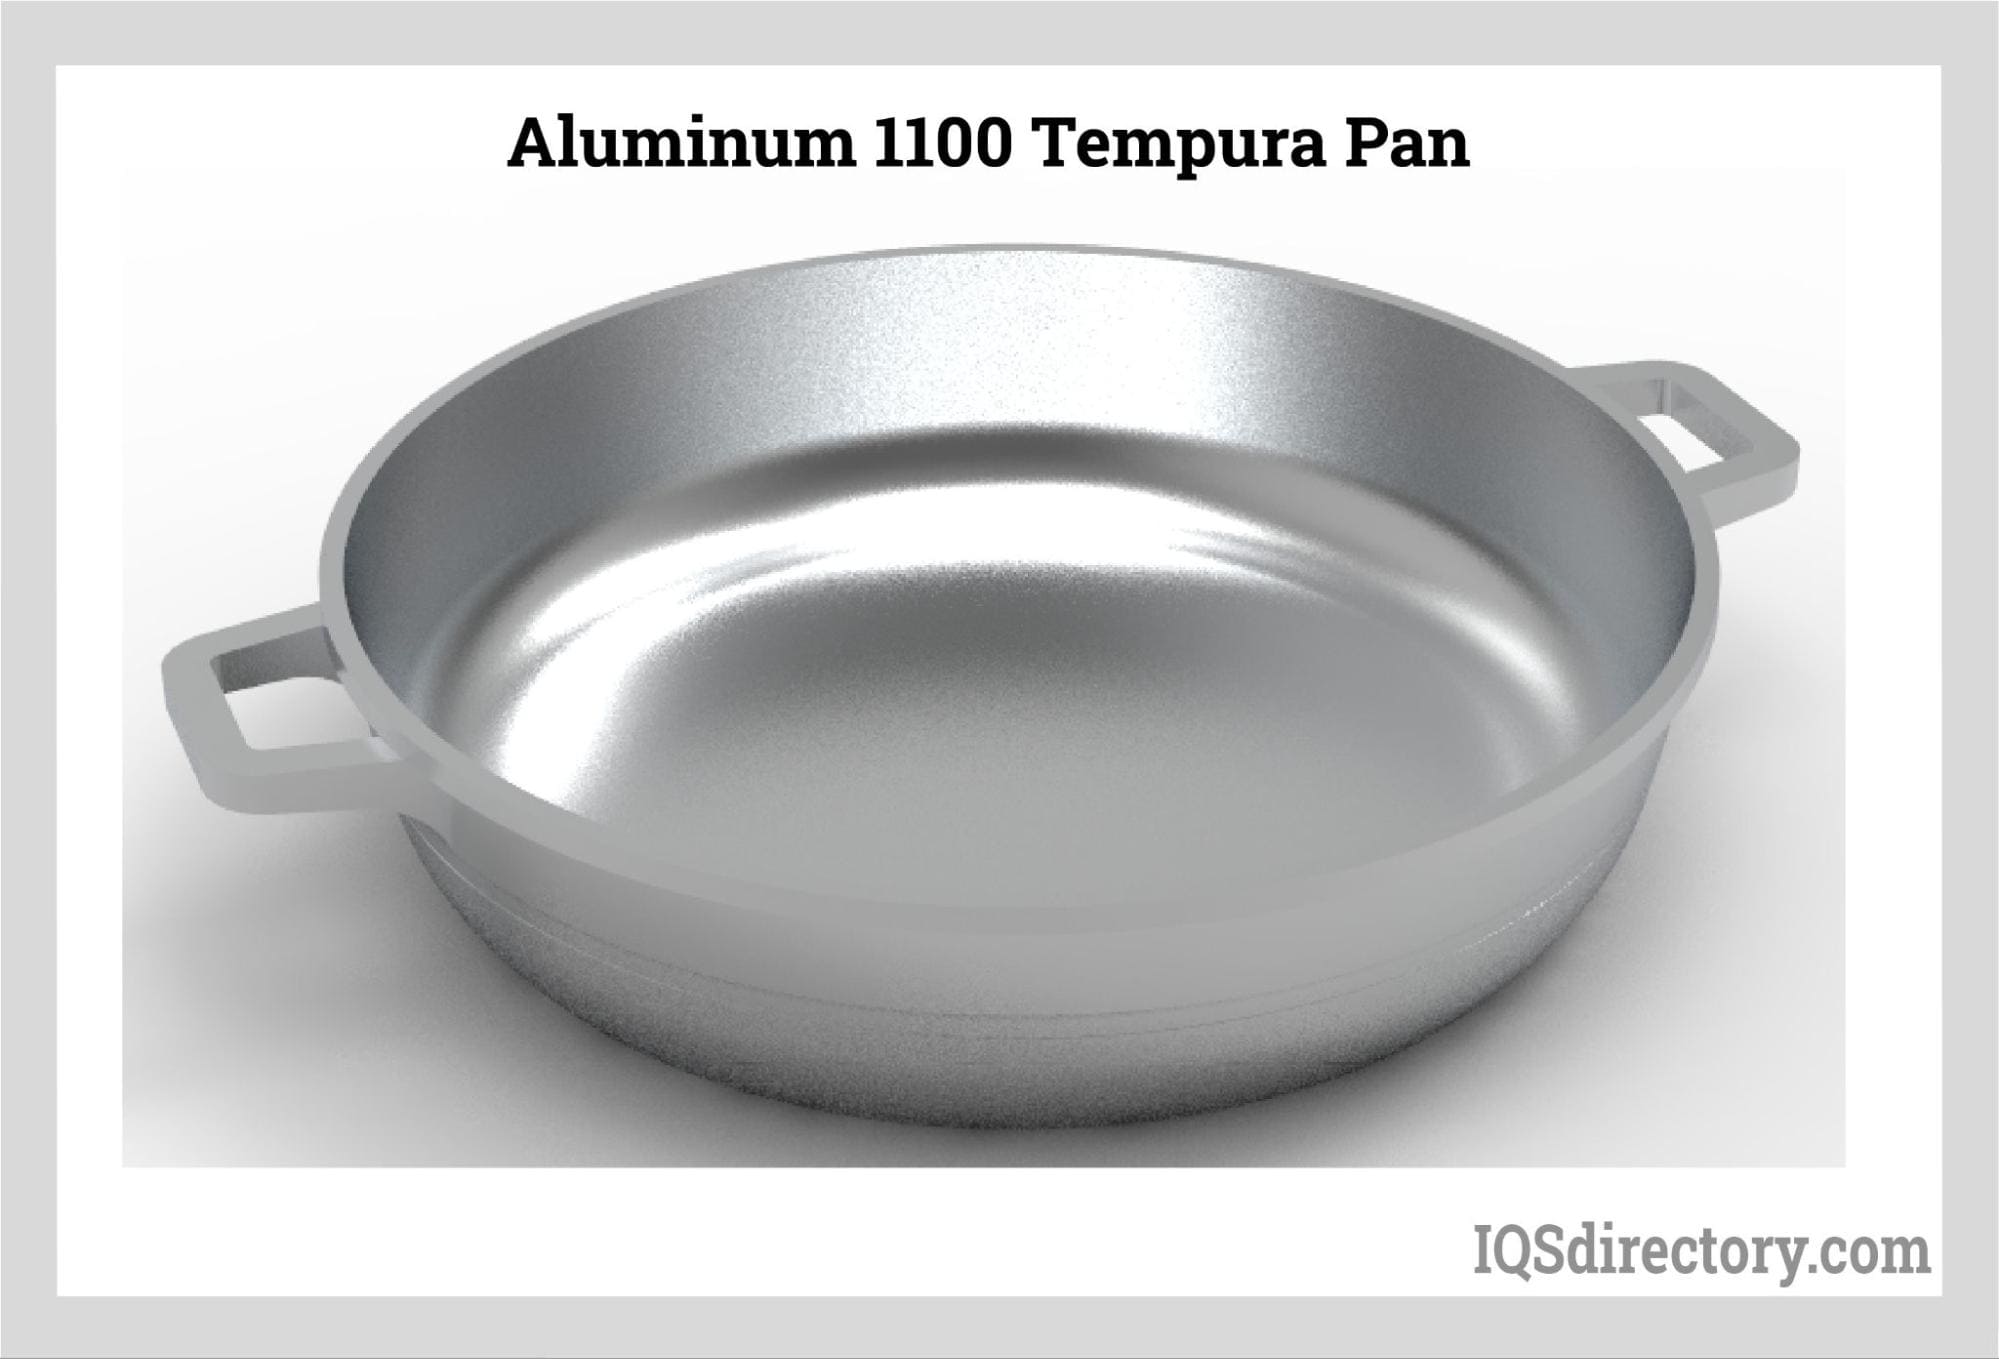 Aluminum 1100 Tempura Pan